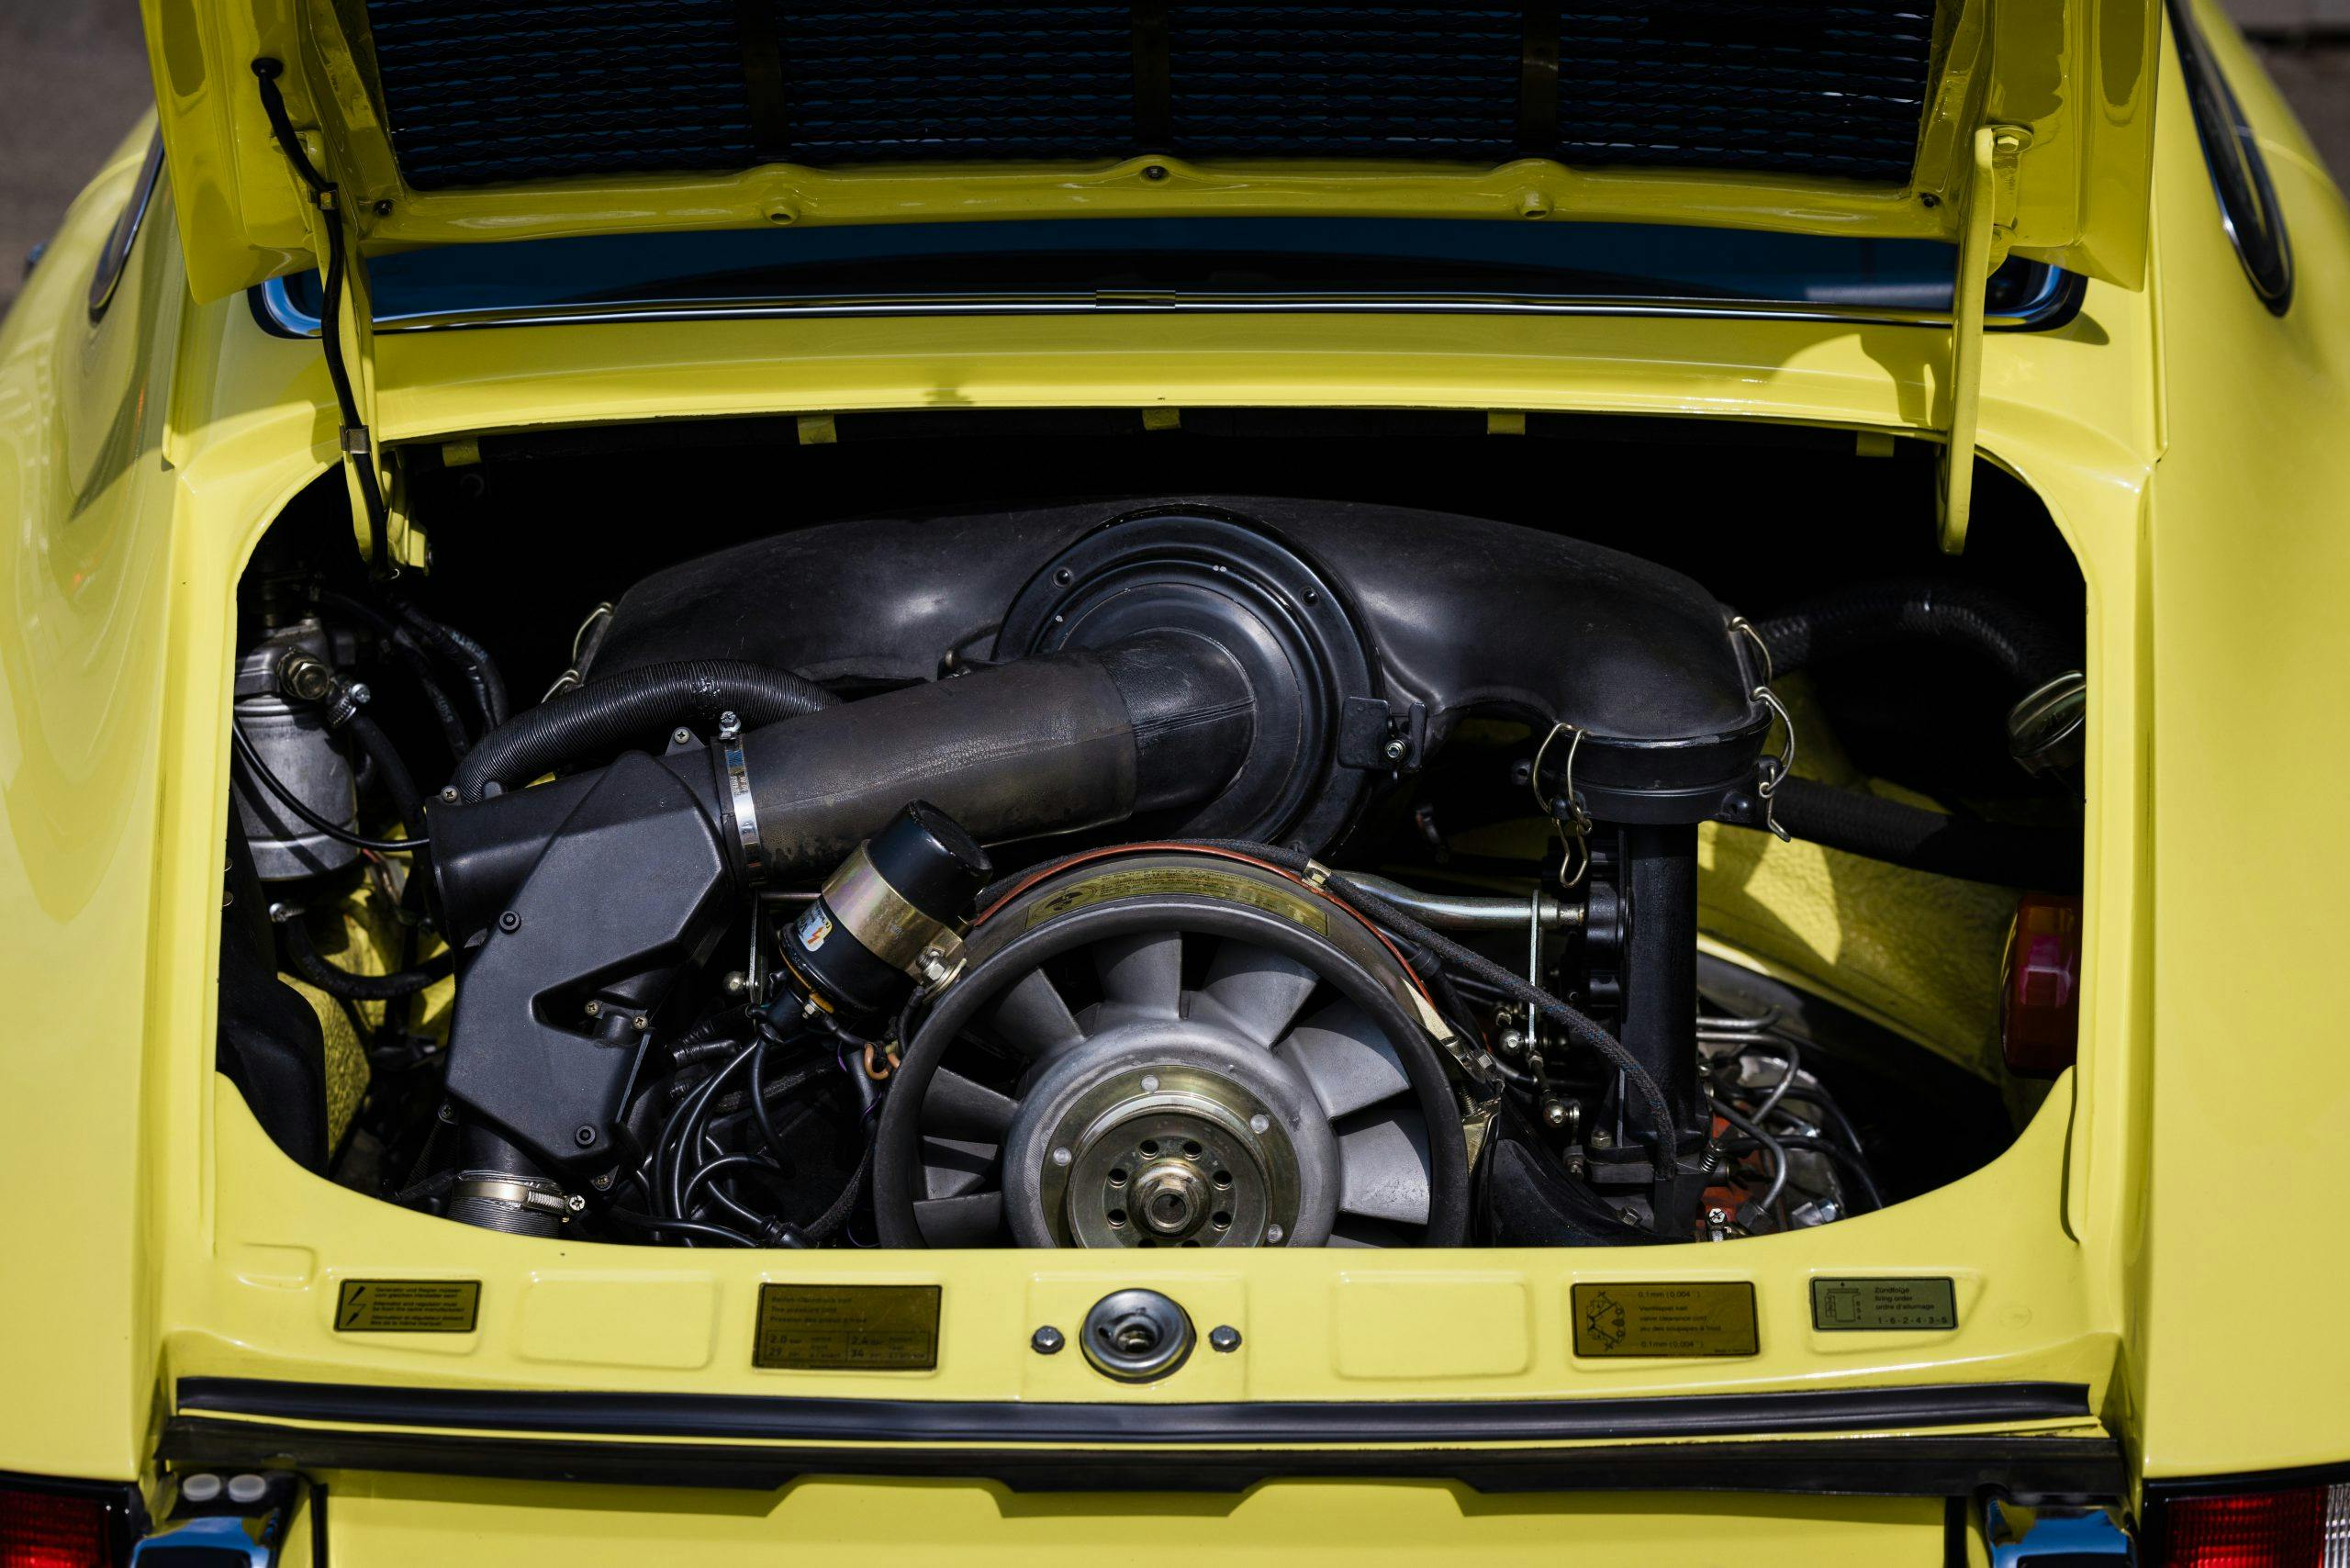 Porsche Museum 911 Carrera 2.7 RS Touring engine